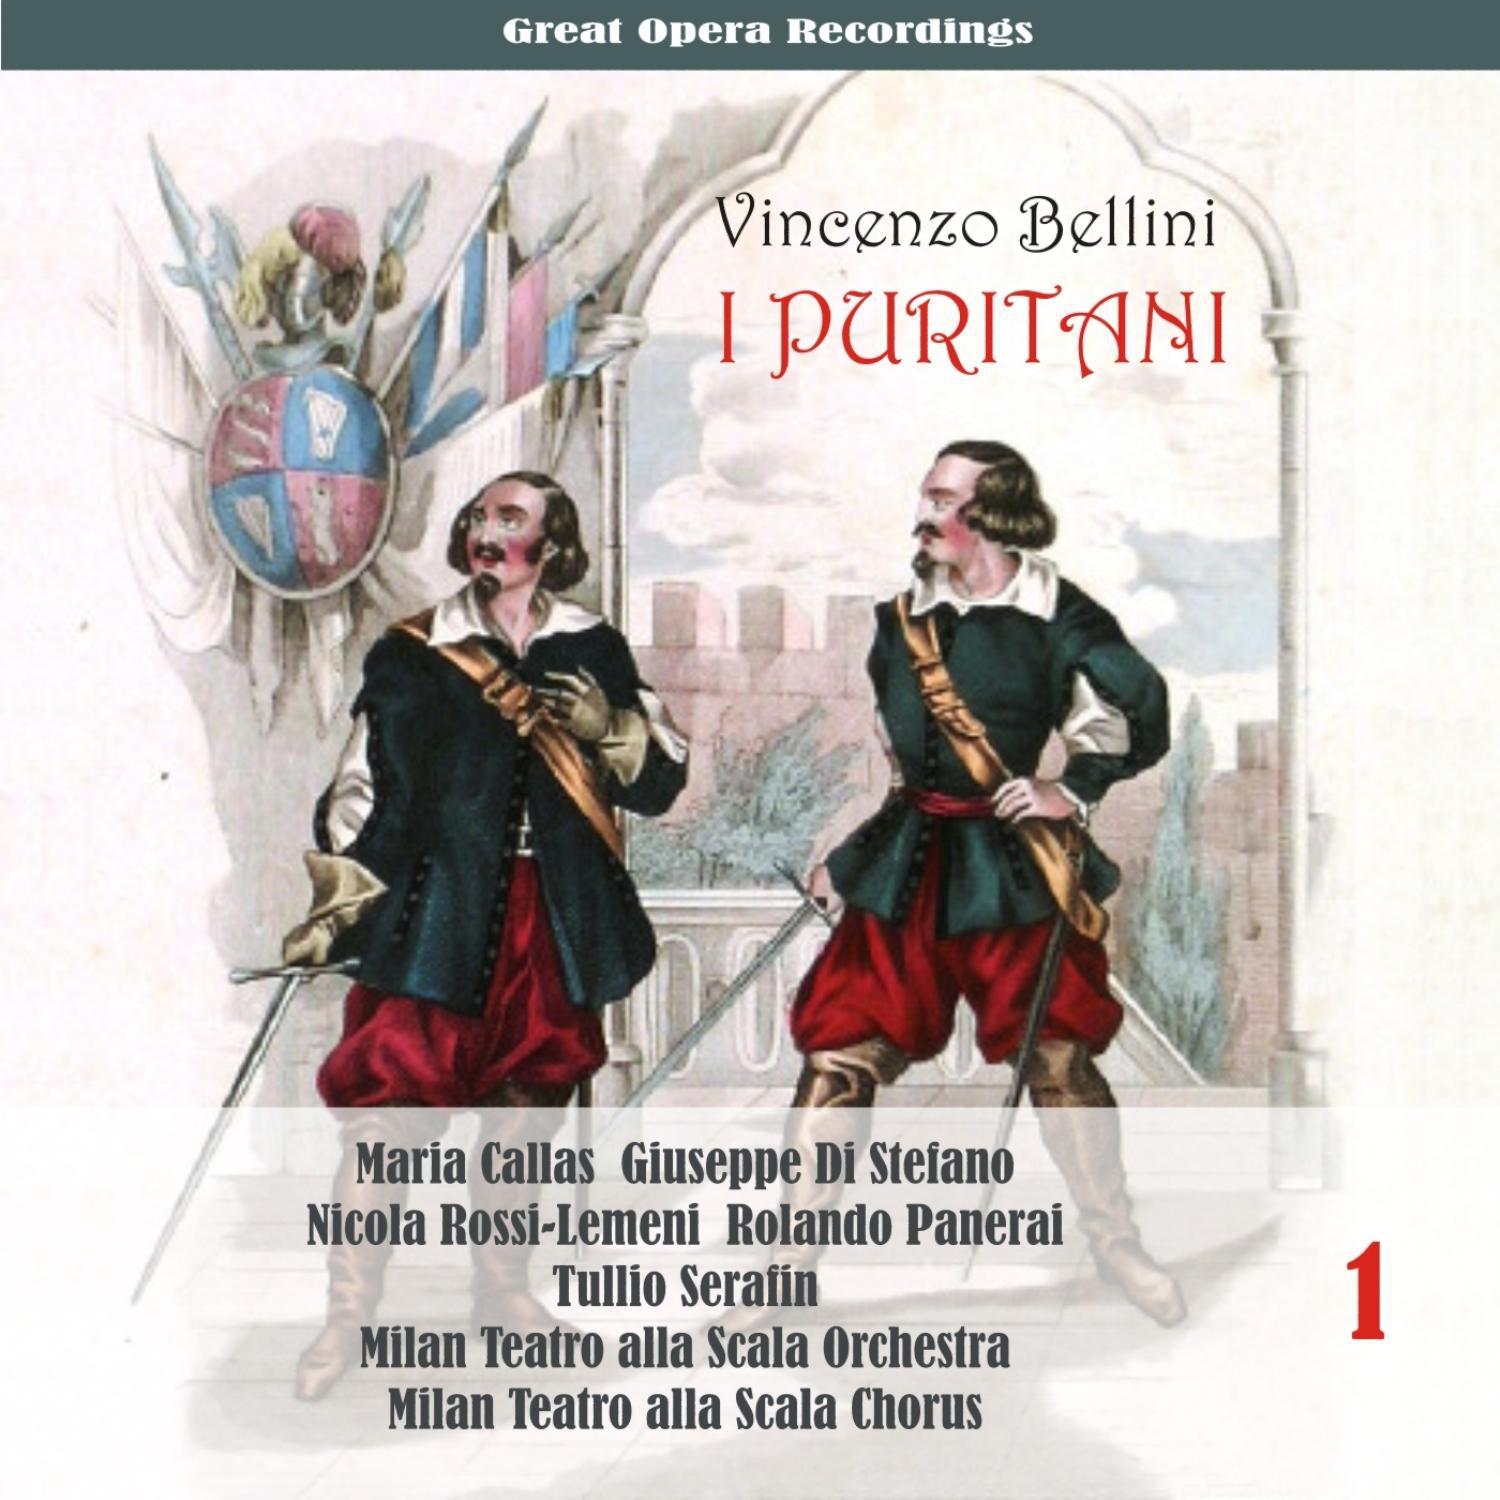 Vincenzo Bellini: I Puritani (Callas, di Stefano, Rossi-Lemeni, Panerai , Serafin ) [1953], Volume 1